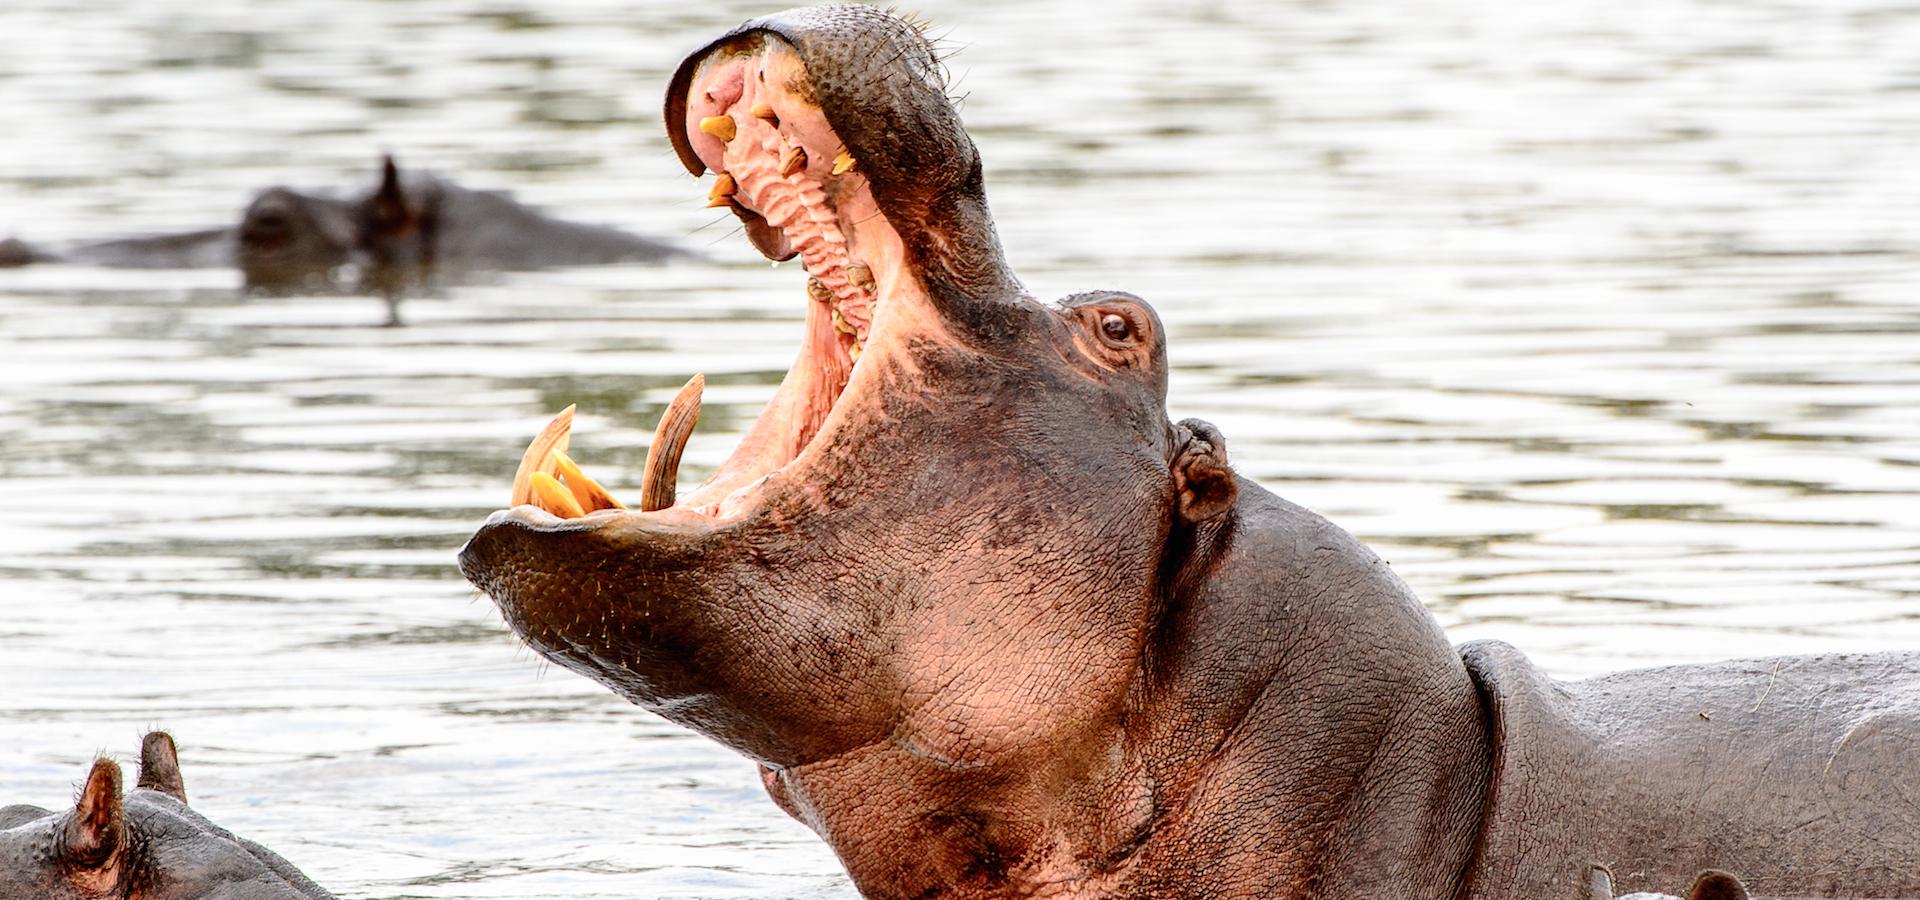 Botswana Reise in das Okavango Delta: Nilpferd mit offenem Maul